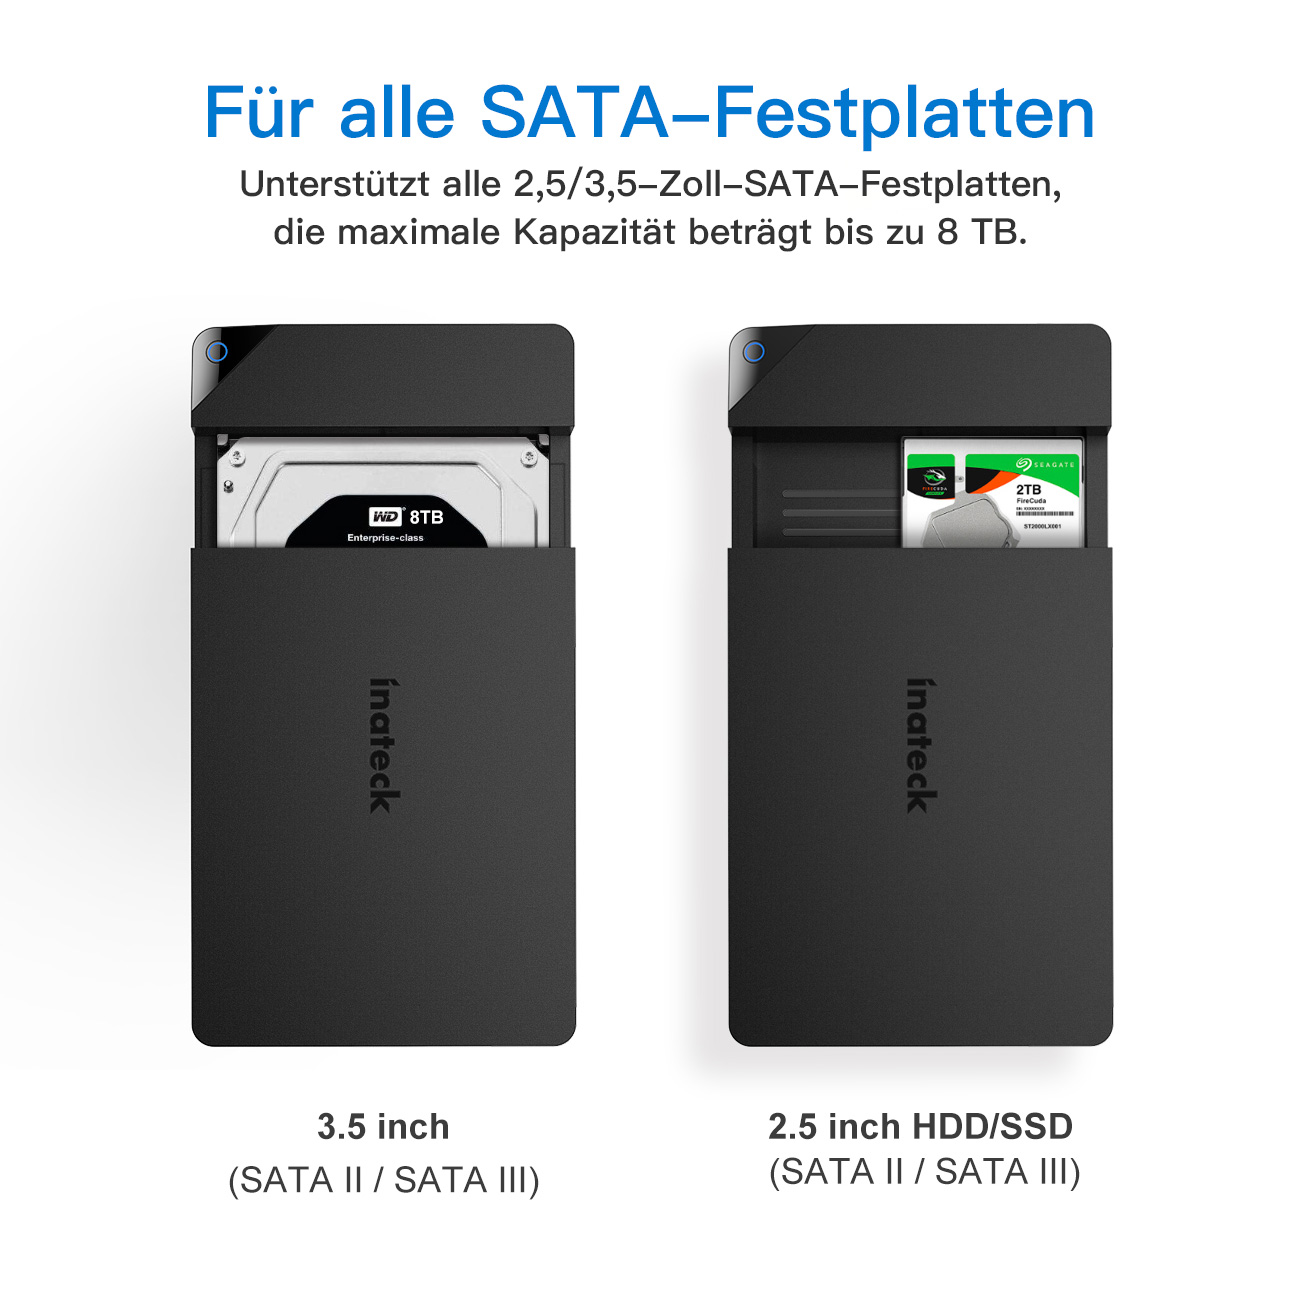 INATECK USB 3.0 zu Festplattengehäuse, Gehäuse HDD HDD SATA SSD Externes black SATA und 2,5”/ 3,5” für Festplattengehäuse